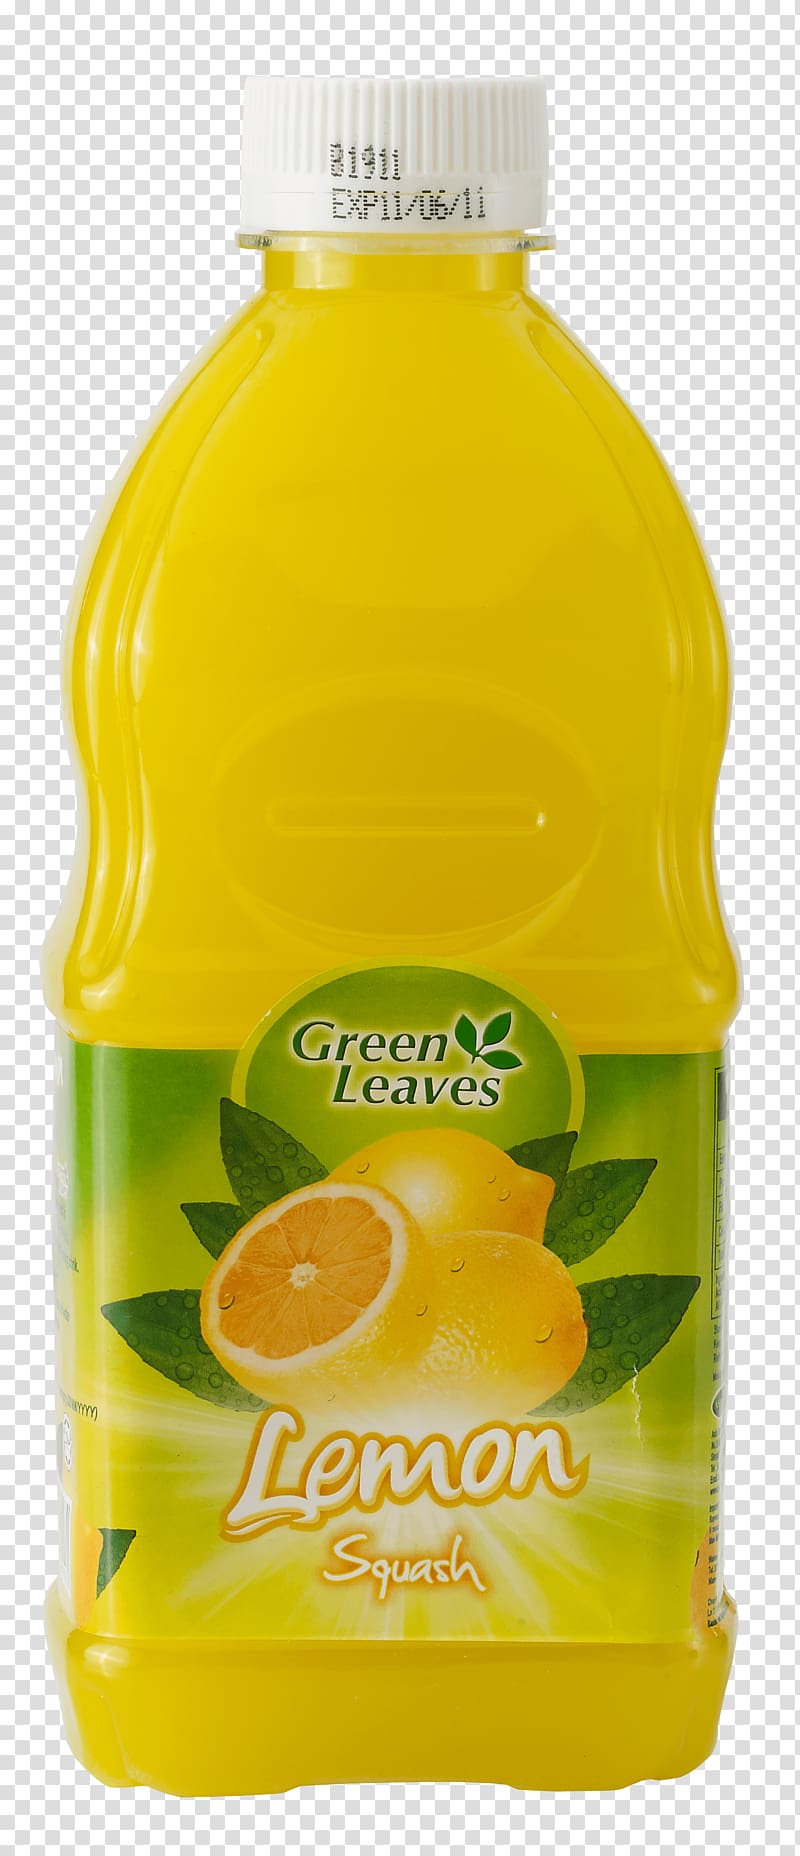 Squash Orange drink Bottle Orange juice Lemon, bottle transparent background PNG clipart